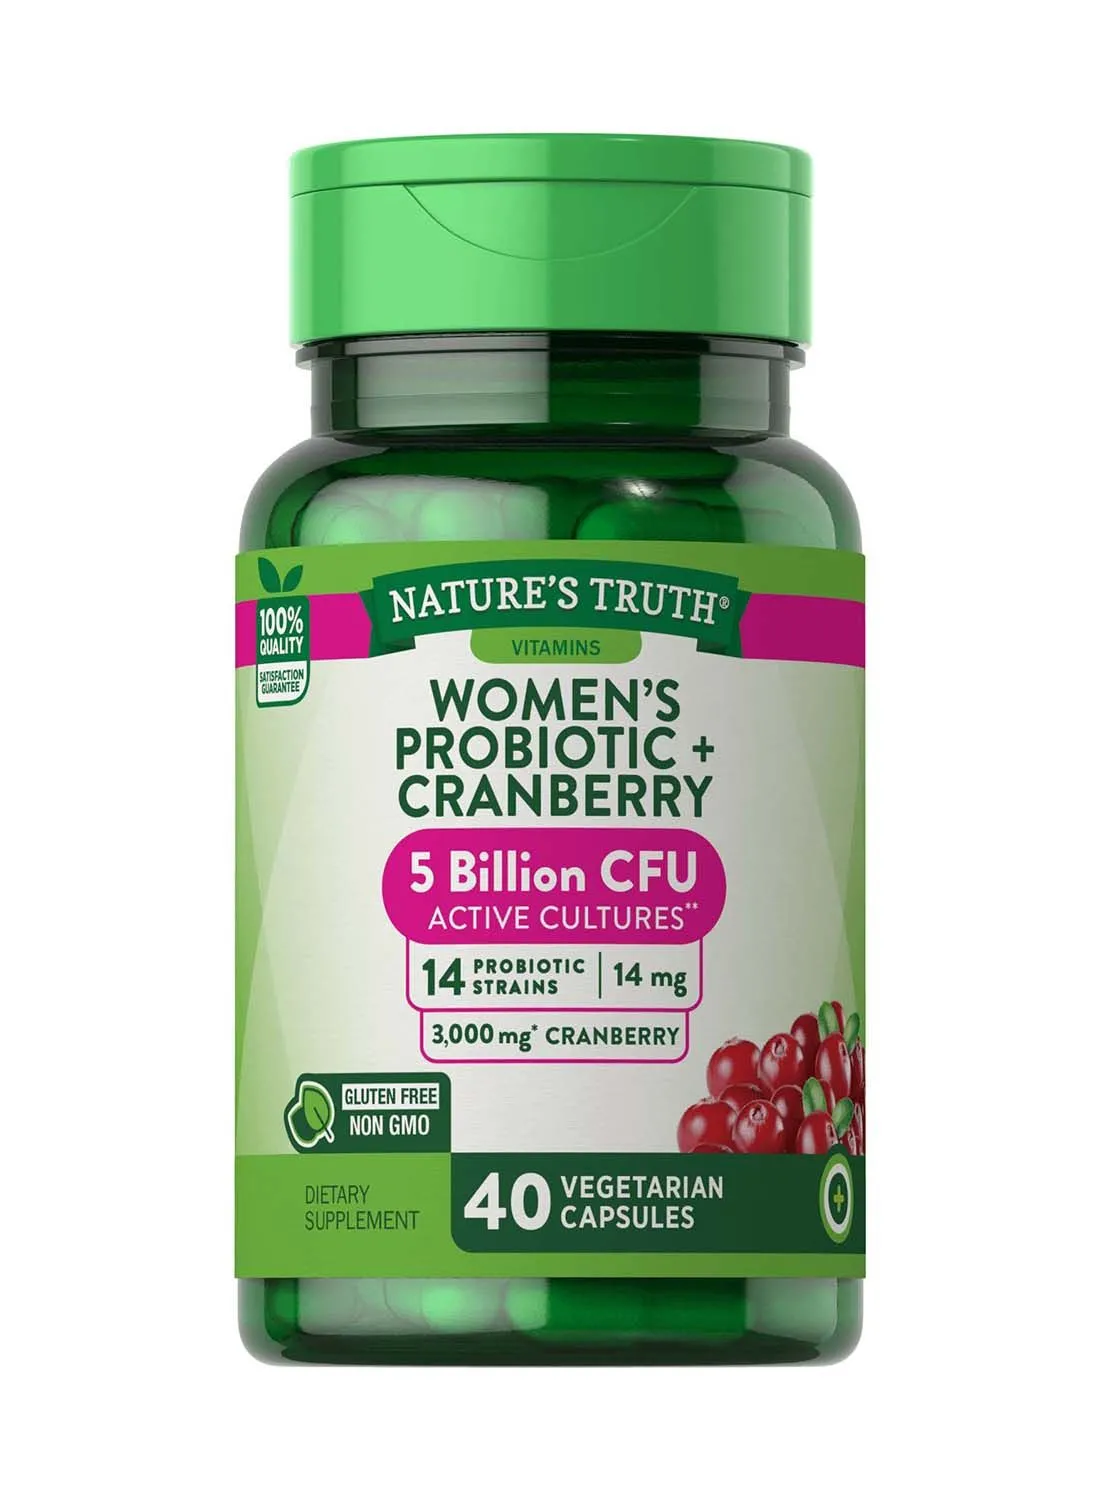 Nature's Truth WOMEN'S PROBIOTIC + CRANBERRY ، 40 كبسولة نباتية